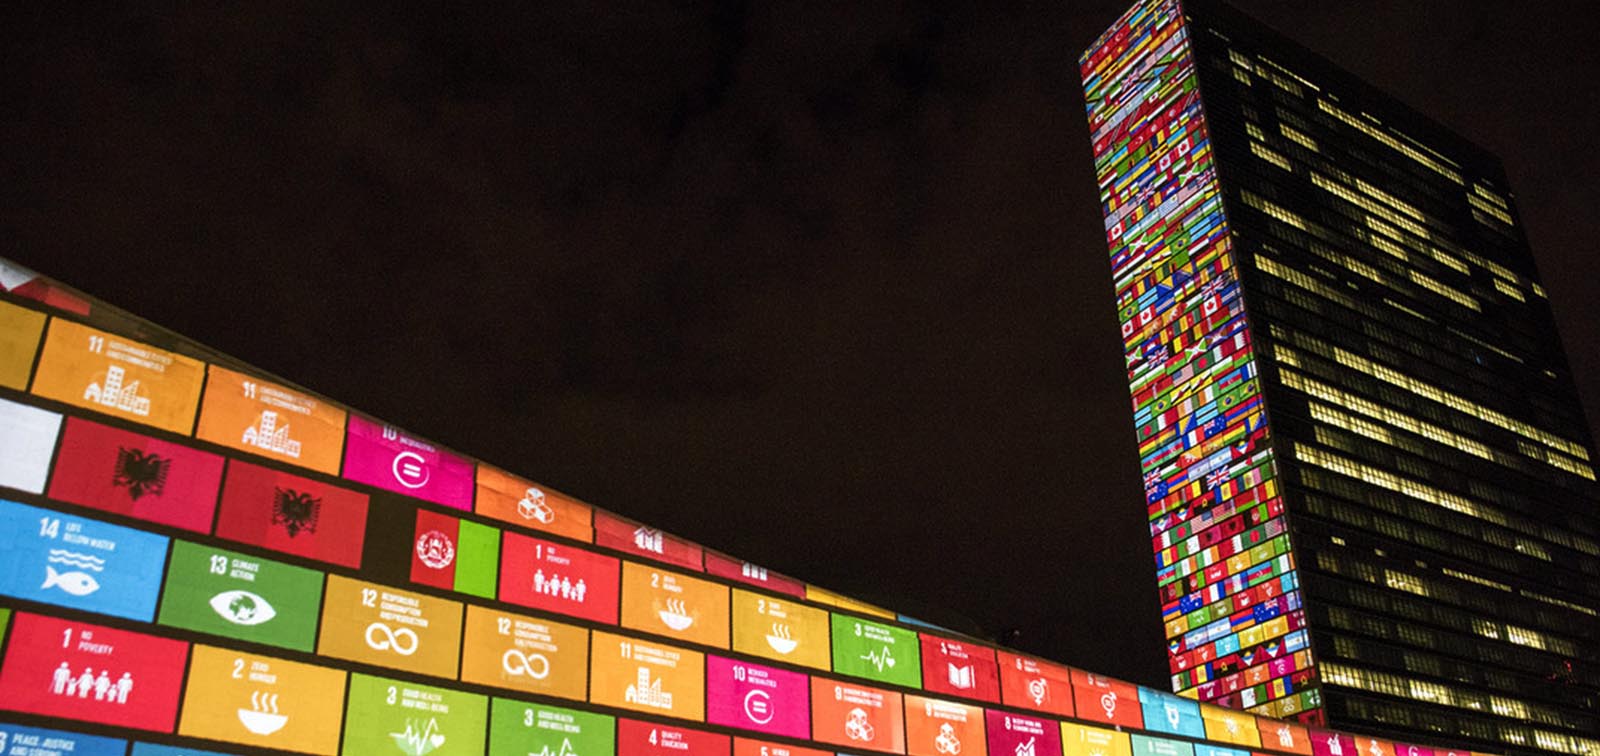 SDGs over the UN headquarters in New York City